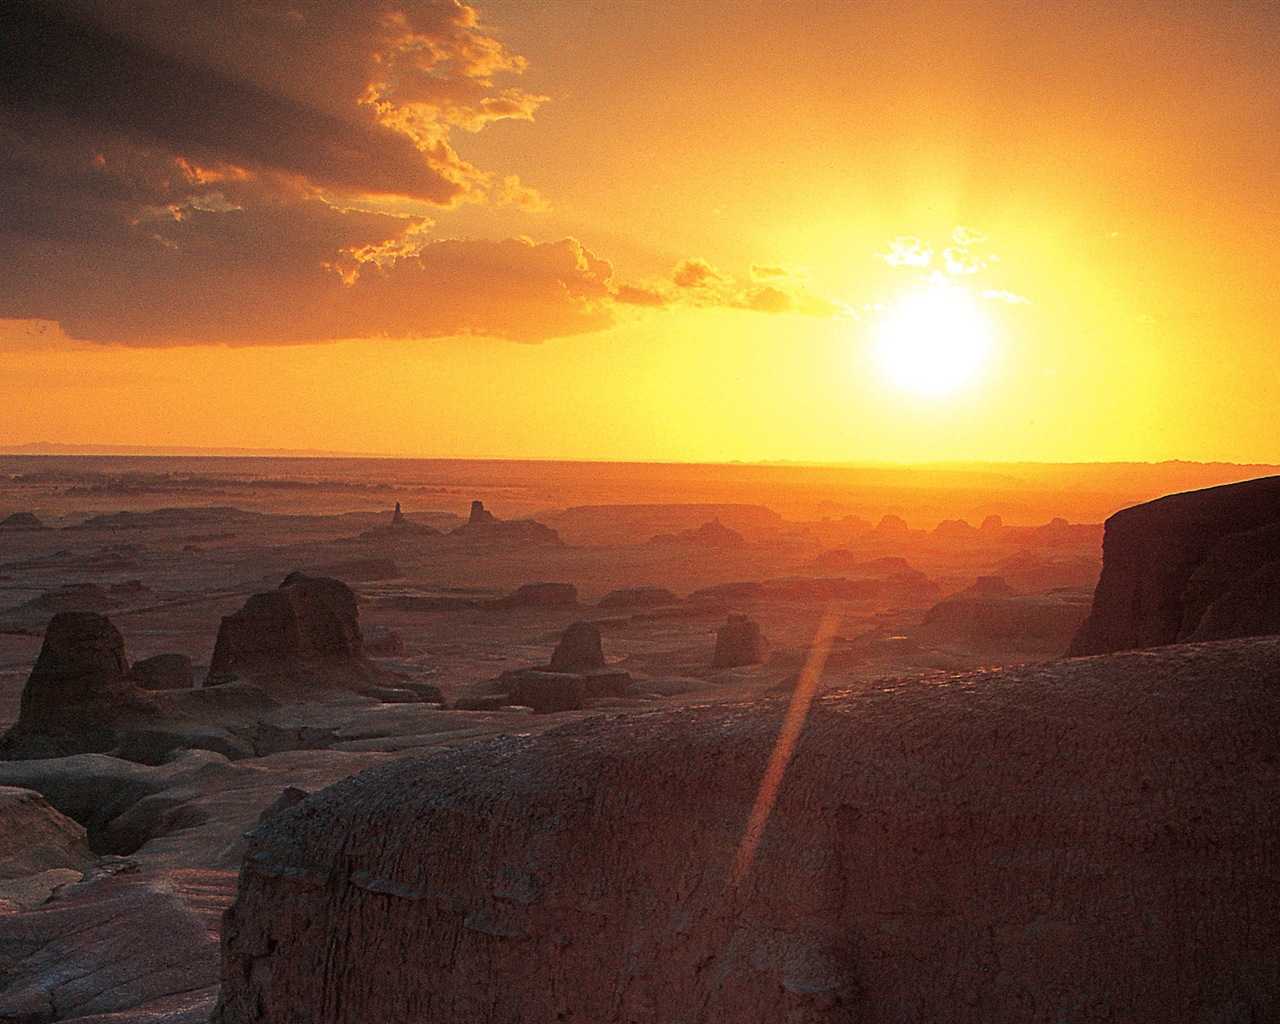 Les déserts chauds et arides, de Windows 8 fonds d'écran widescreen panoramique #12 - 1280x1024